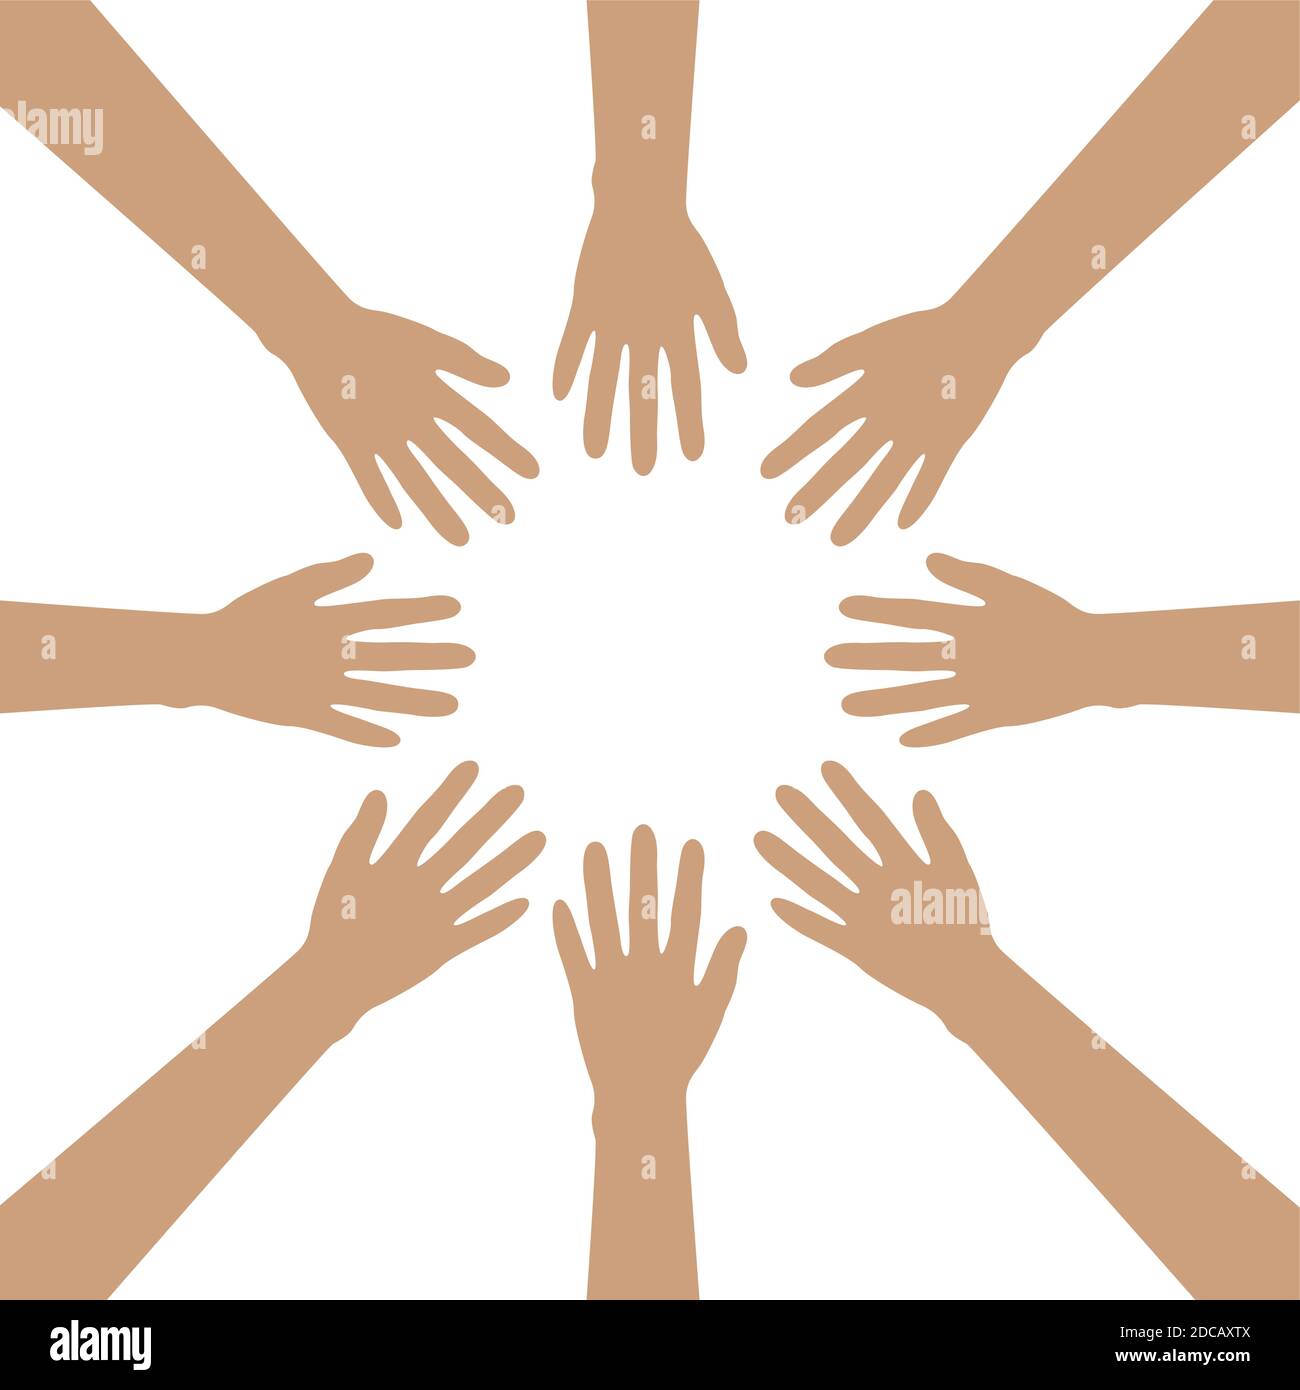 gruppo di mani umane costruiscono un cerchio isolato su bianco Illustrazione vettoriale EPS10 Illustrazione Vettoriale